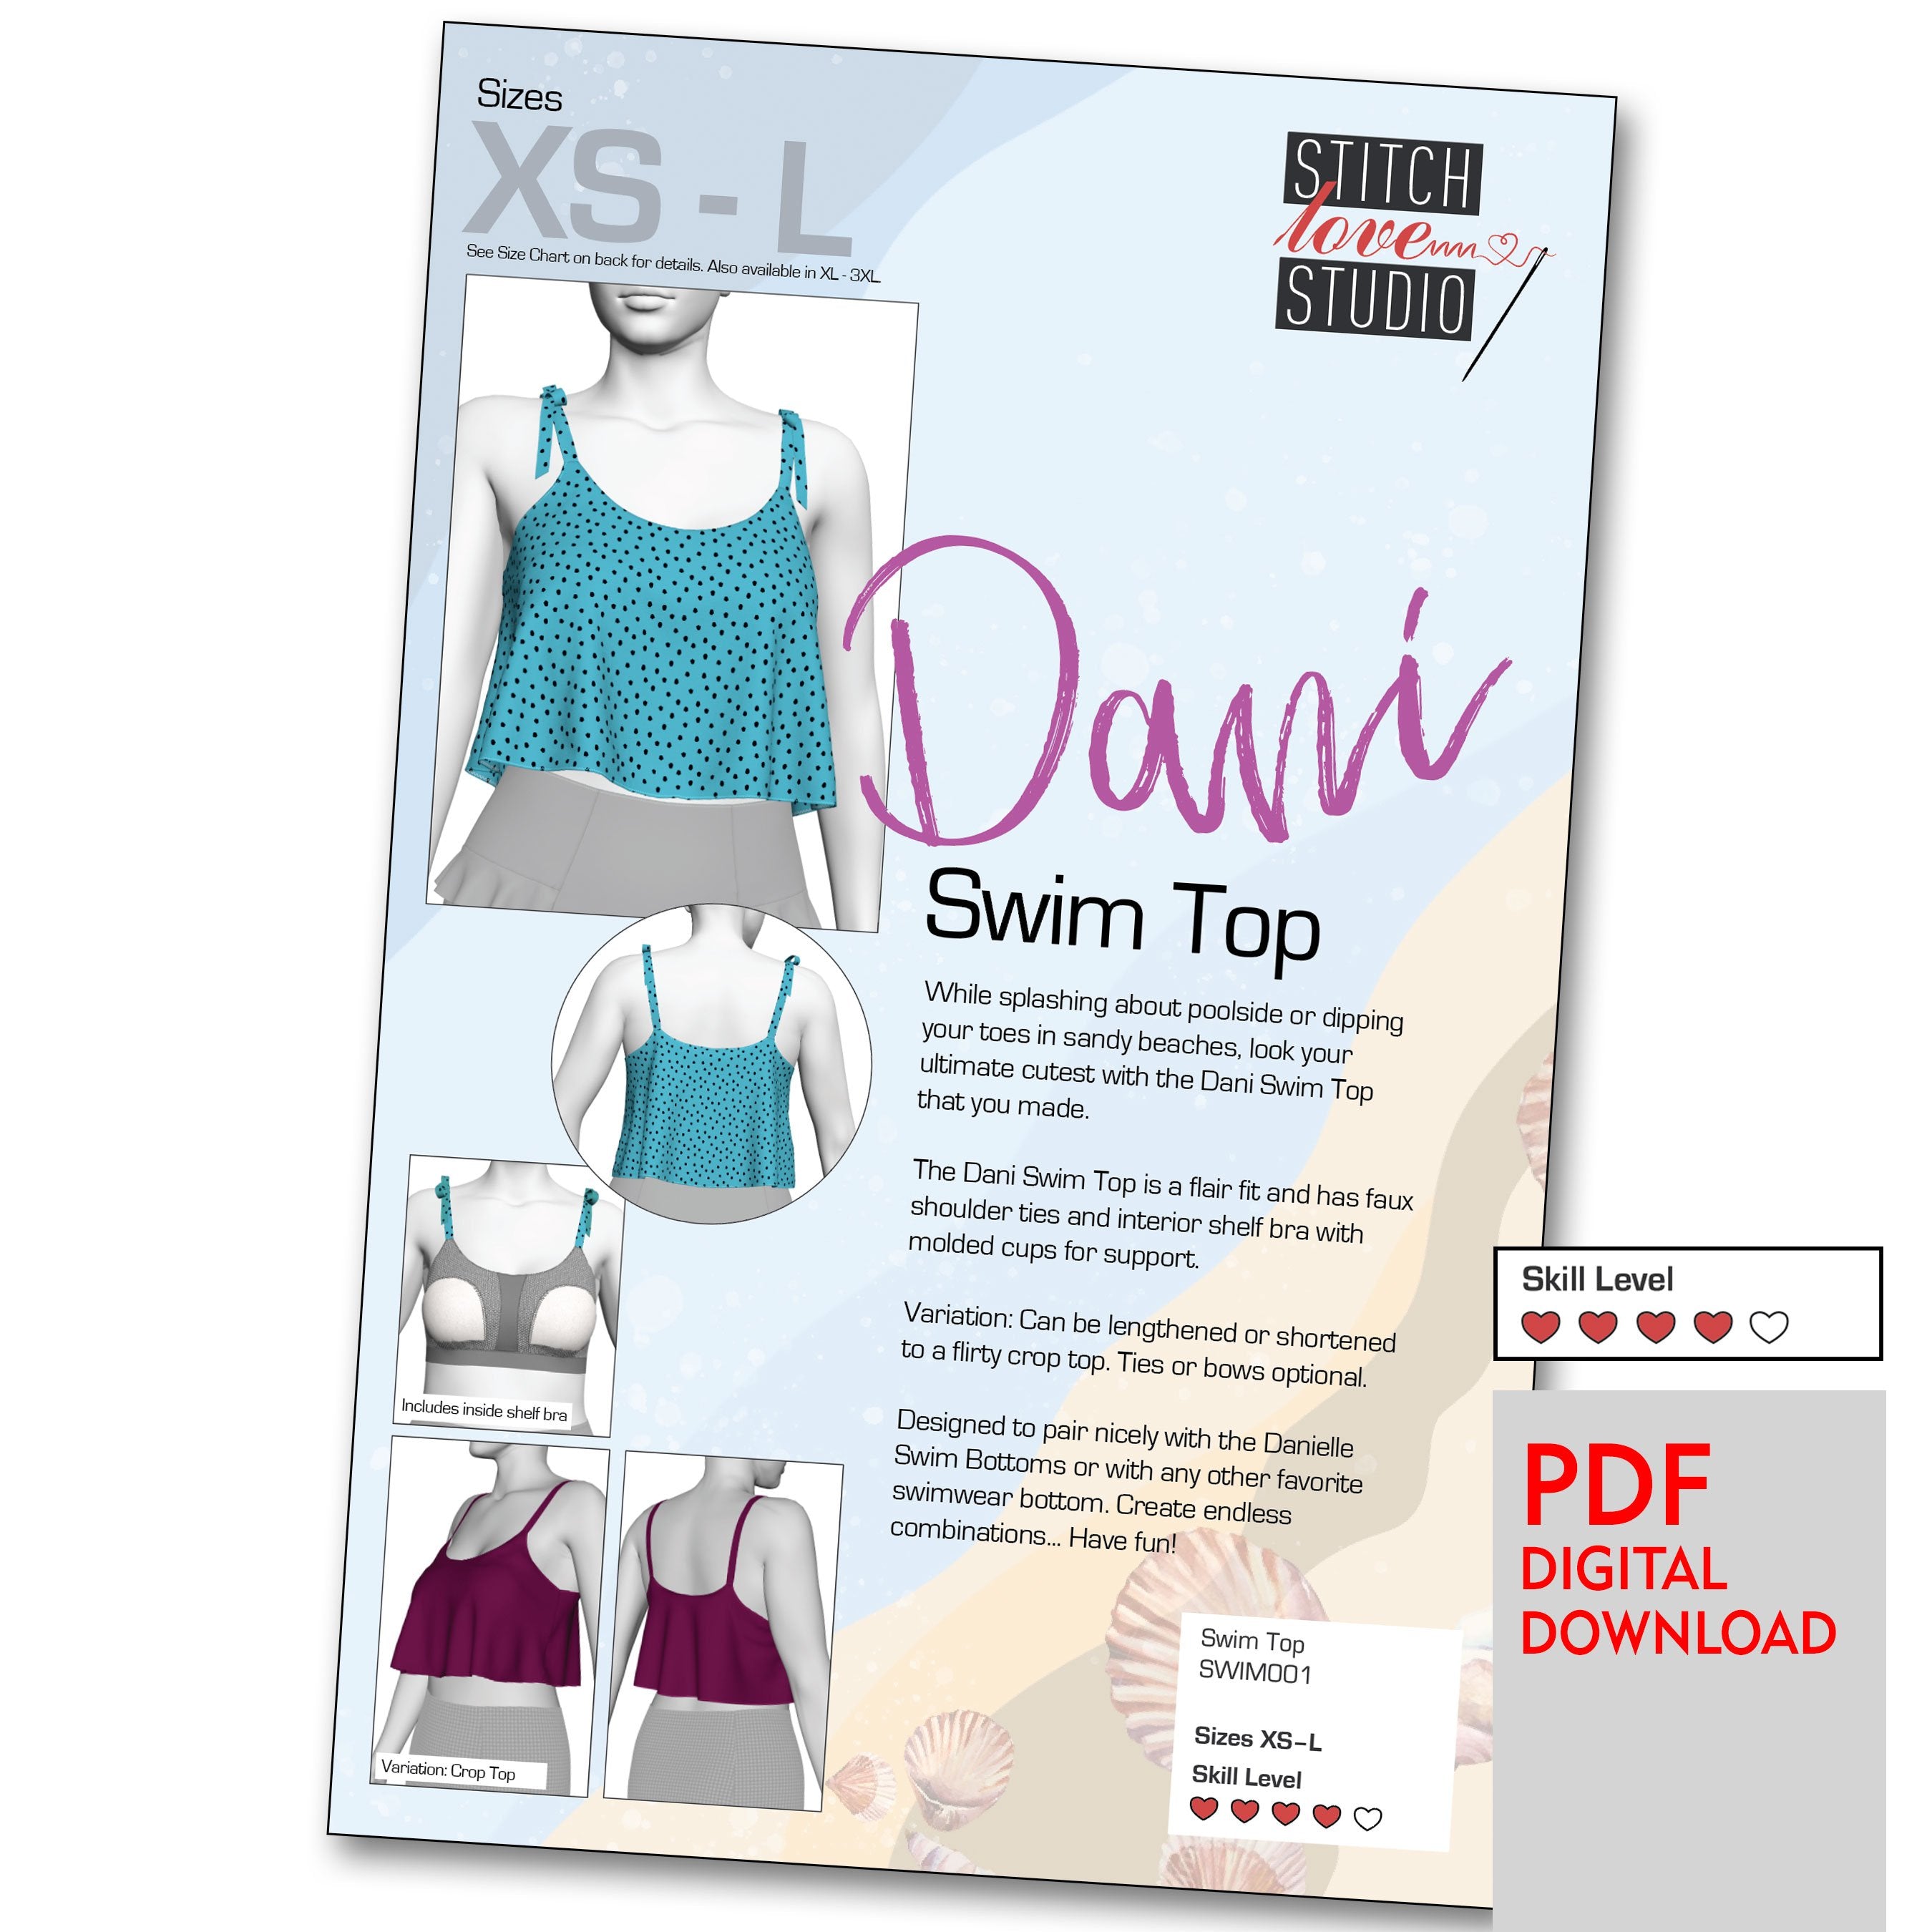 PDF Primrose Dawn Sewing Pattern- Maritza Sports Bra – Stitch Love Studio